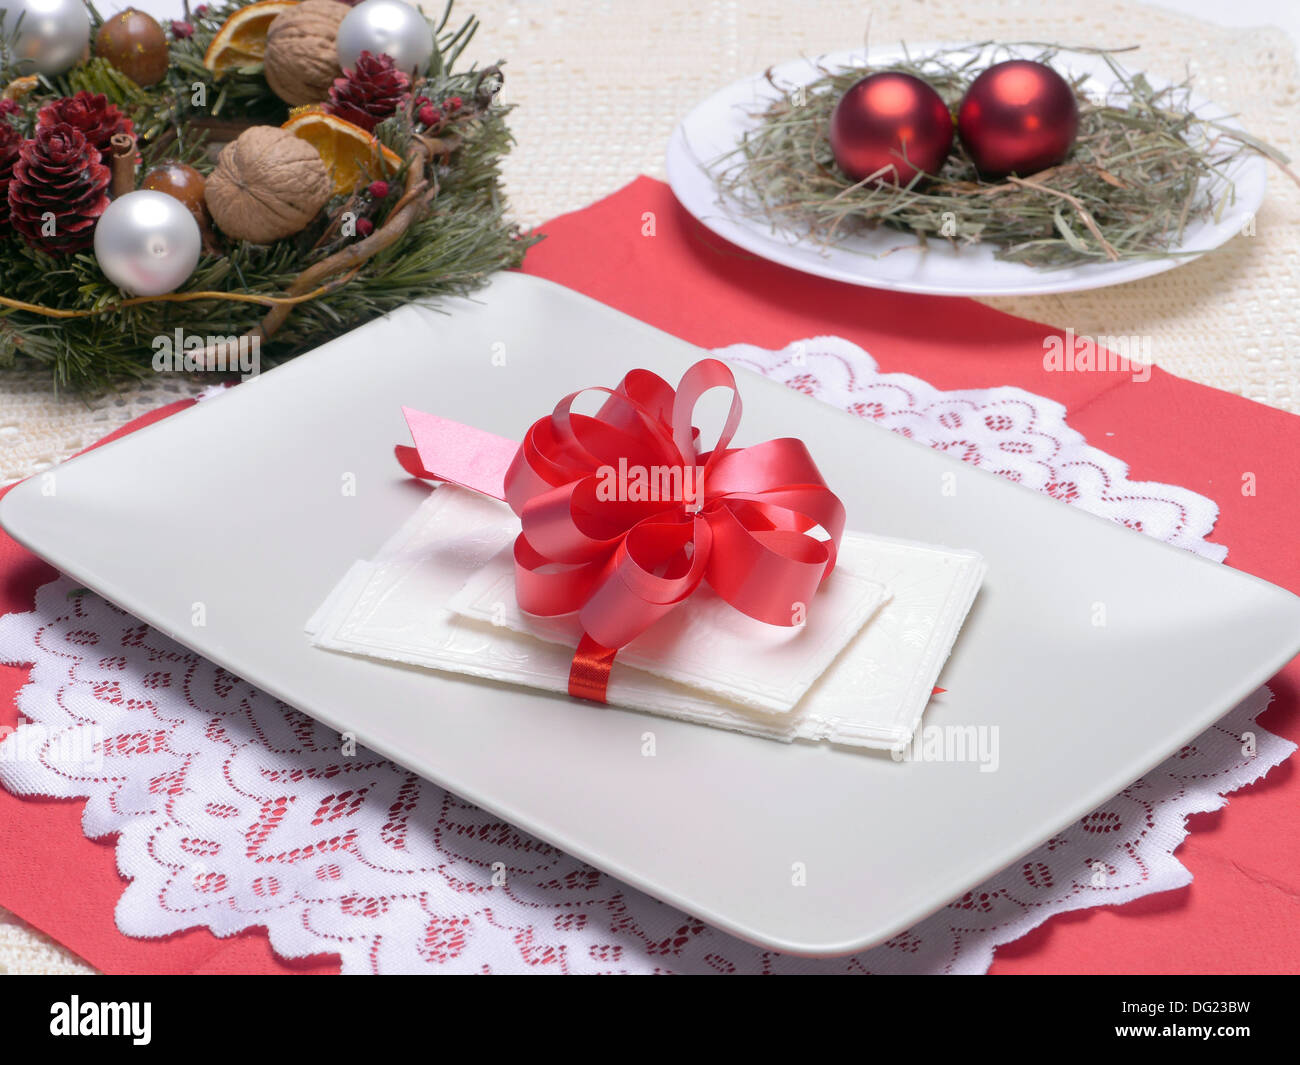 Tradizionale per la Vigilia di Natale fetta di bianco su una piastra con coccarda rossa Foto Stock